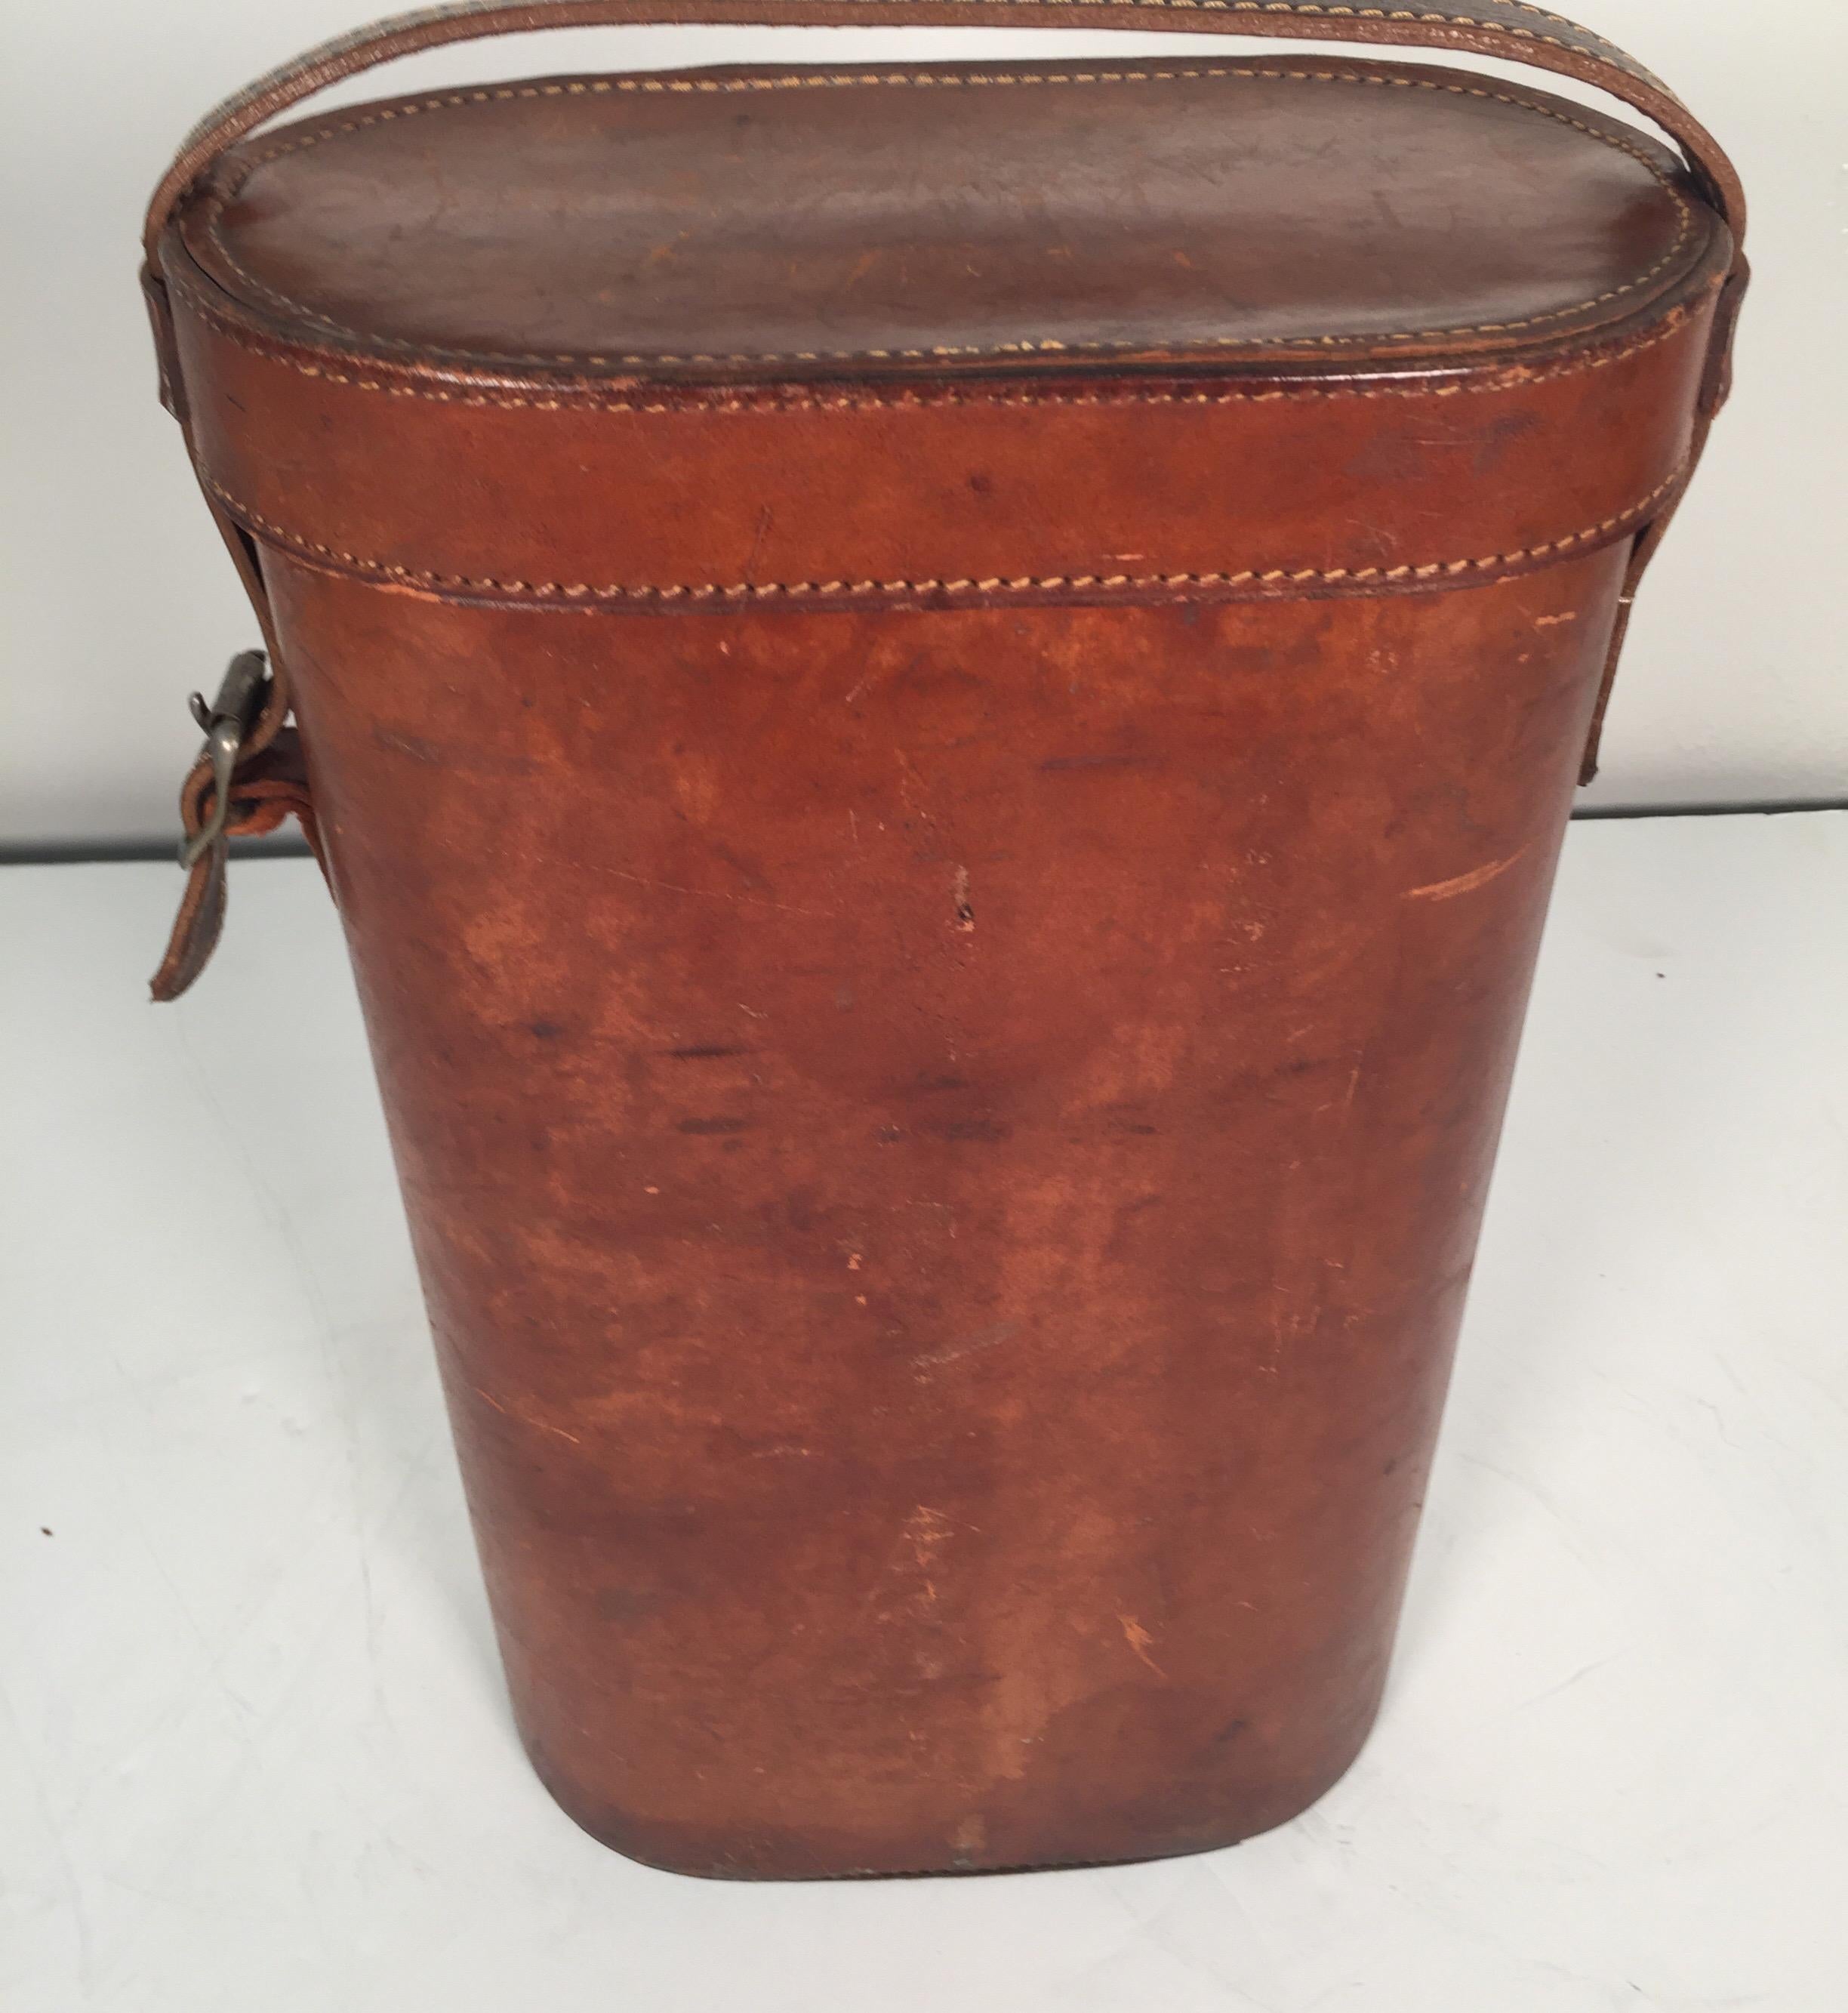 vintage leather wine bottle carrier